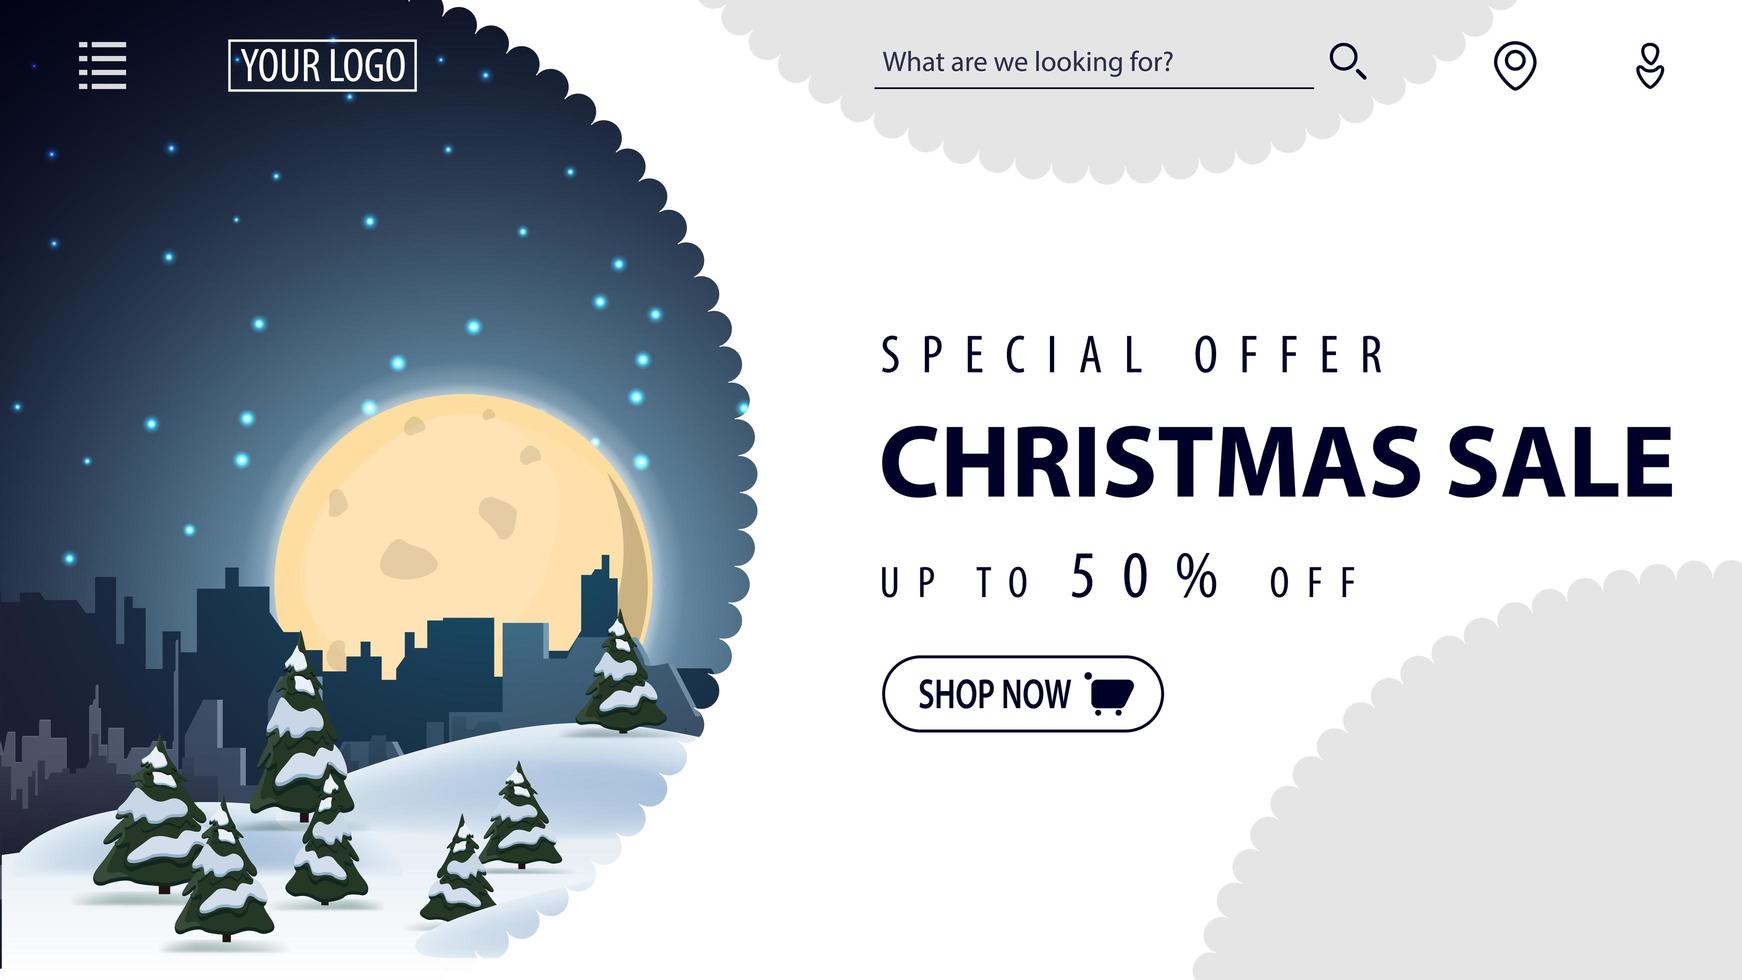 speciale aanbieding, kerstuitverkoop, tot 50 korting, mooie witte kortingsbanner voor website in minimalistische witte stijl met winterlandschap op achtergrond vector